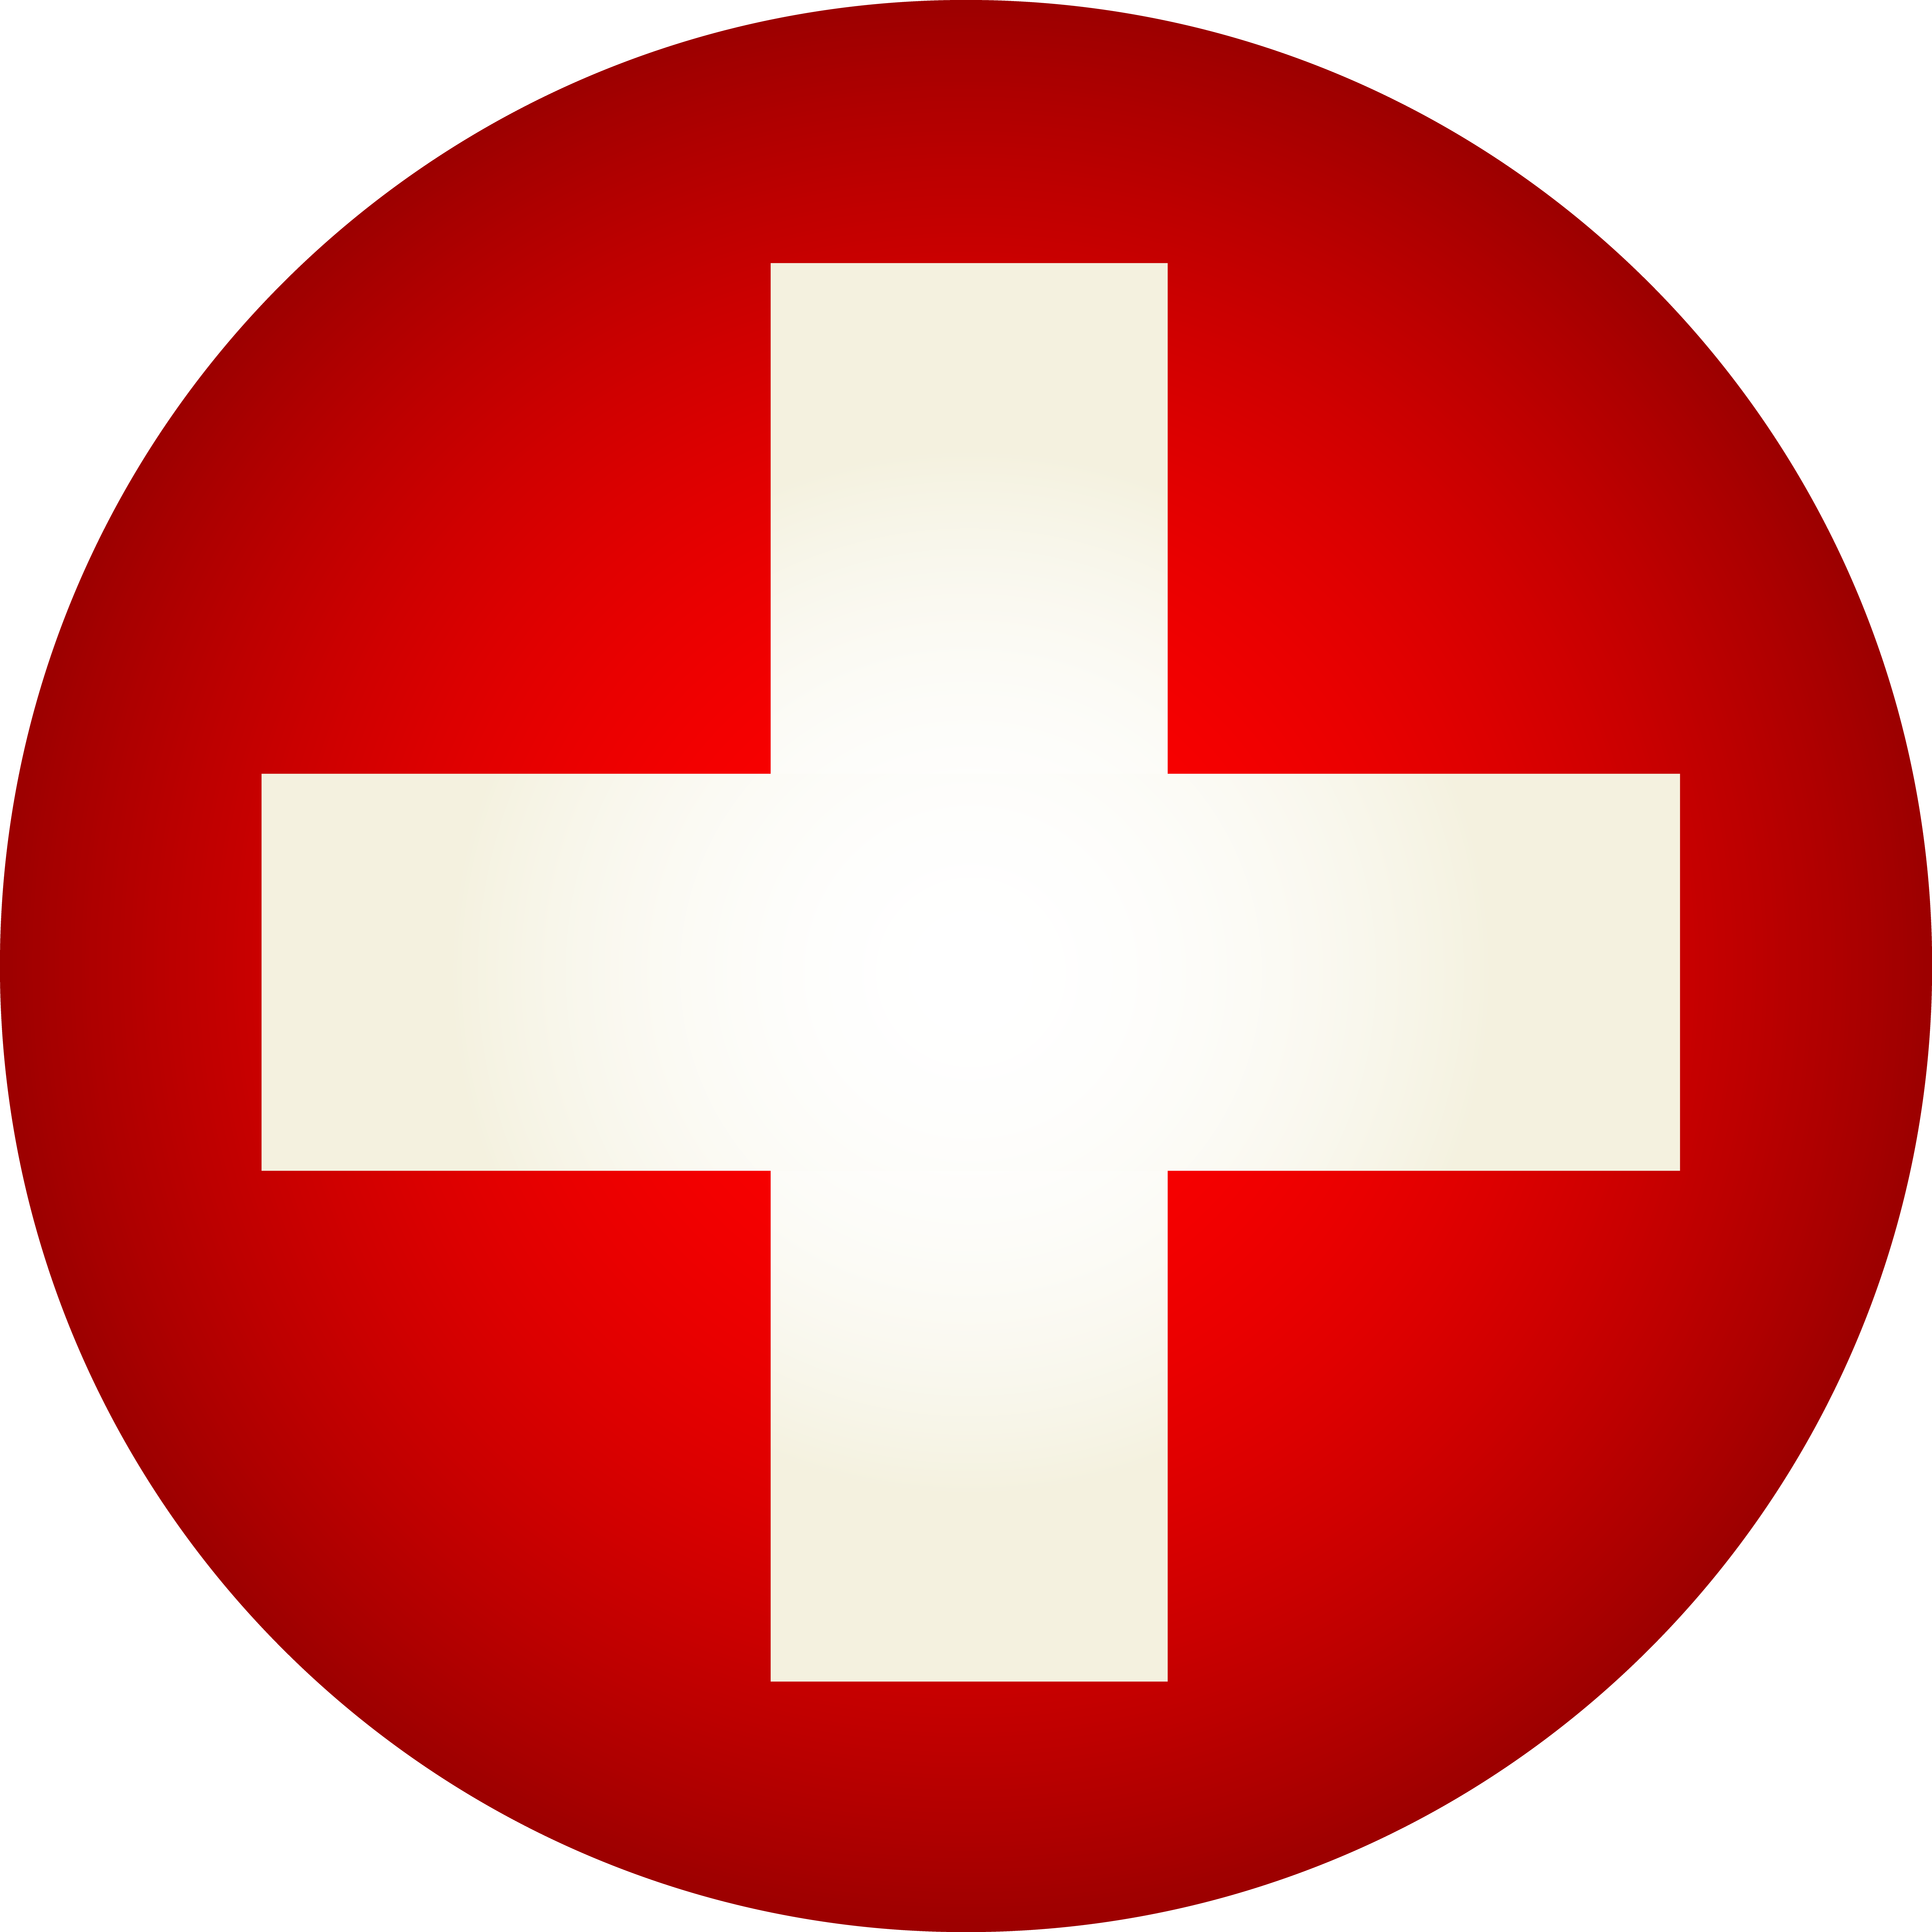 Знак красный круг с крестом. Красный крест Швейцария. Опознавательный знак ВВС Швейцарии. Флаг Швейцарии. Медицинский знак.